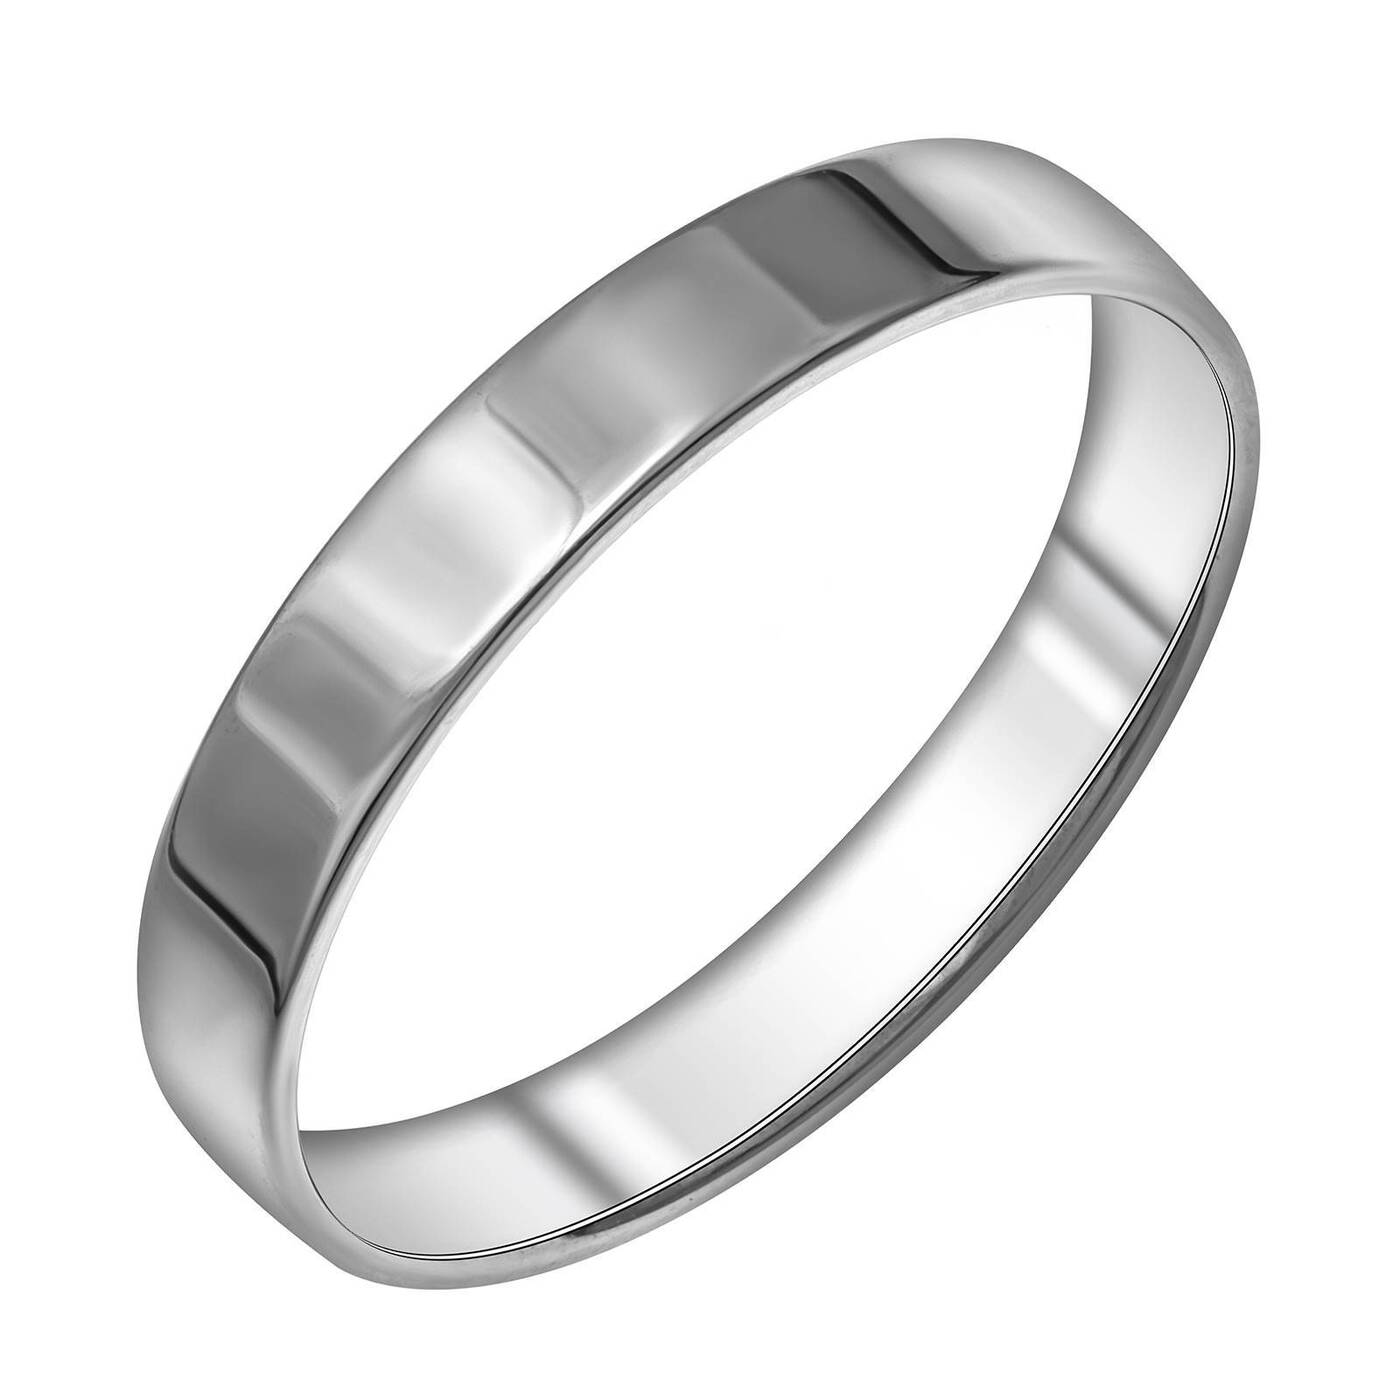 Купить обручальное серебро. Серебряное обручальное кольцо. Обручальные кольца серебро. Обручальные кольца плоские серебро. Серебряное кольцо прямое.